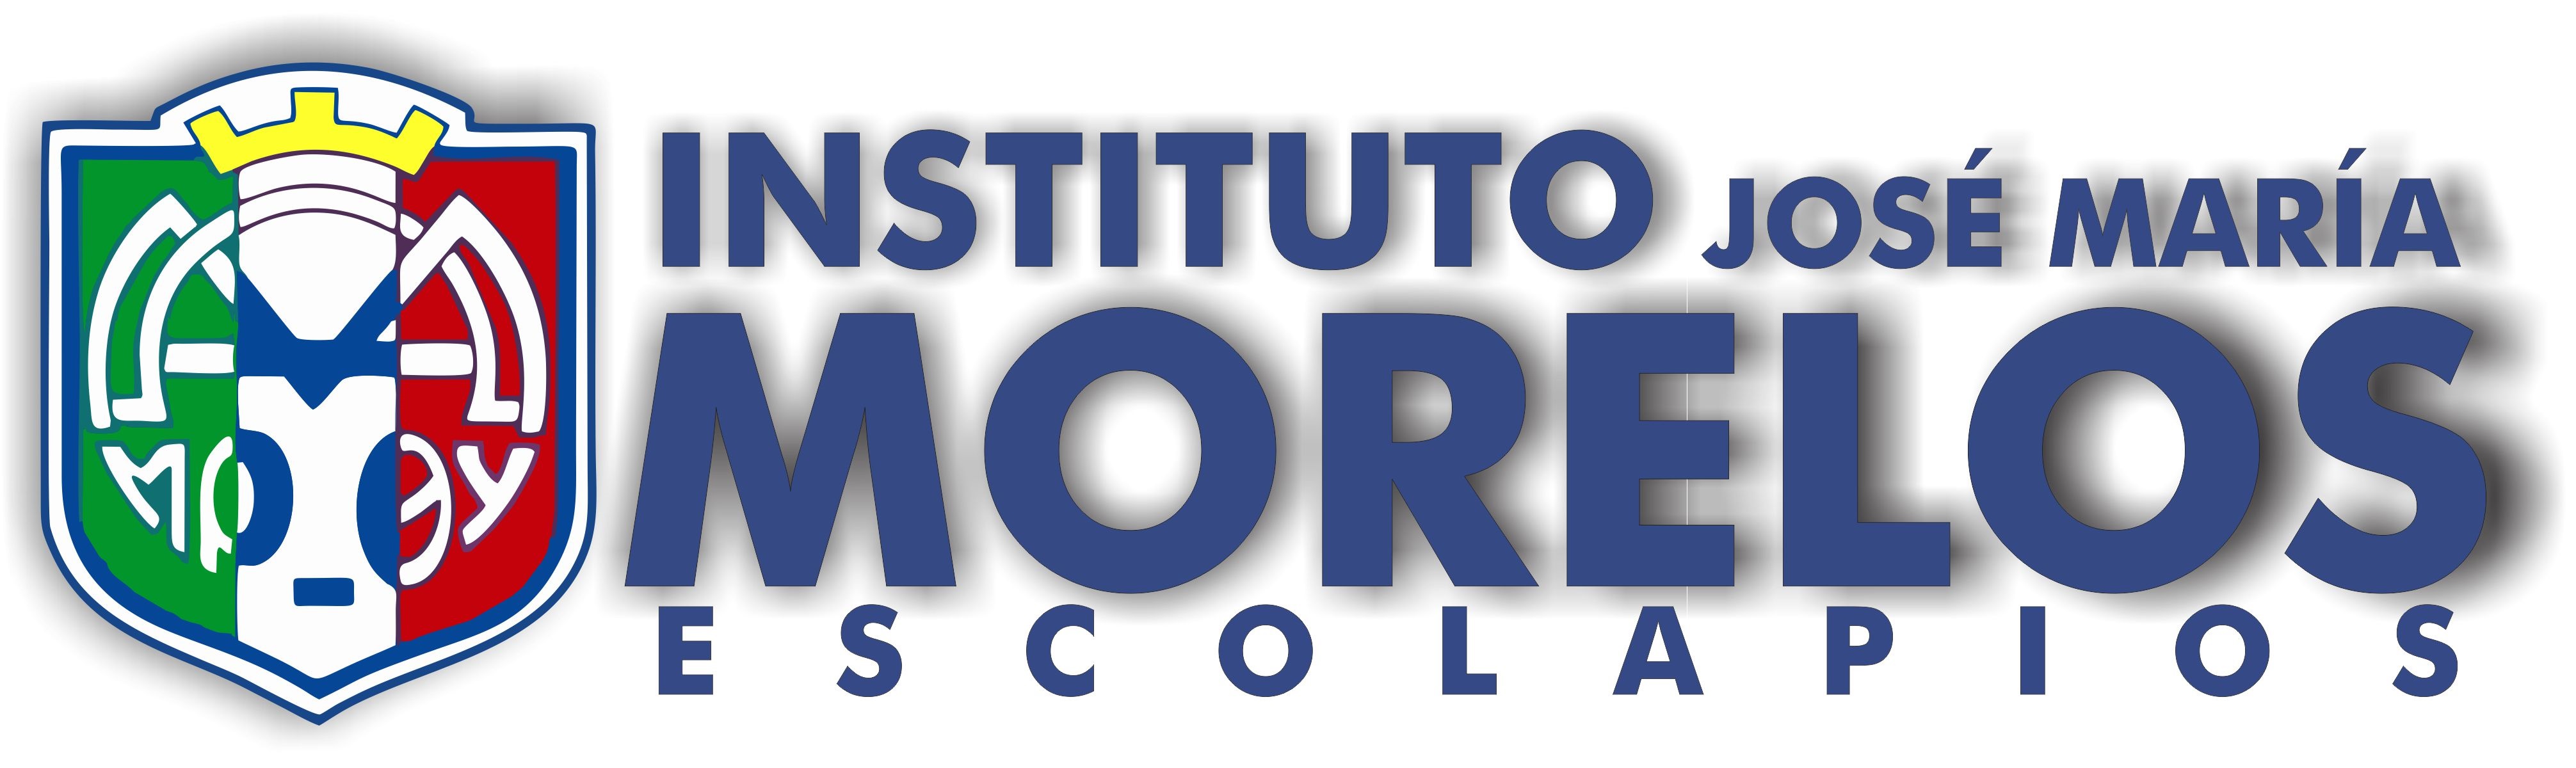 Instituto José María Morelos